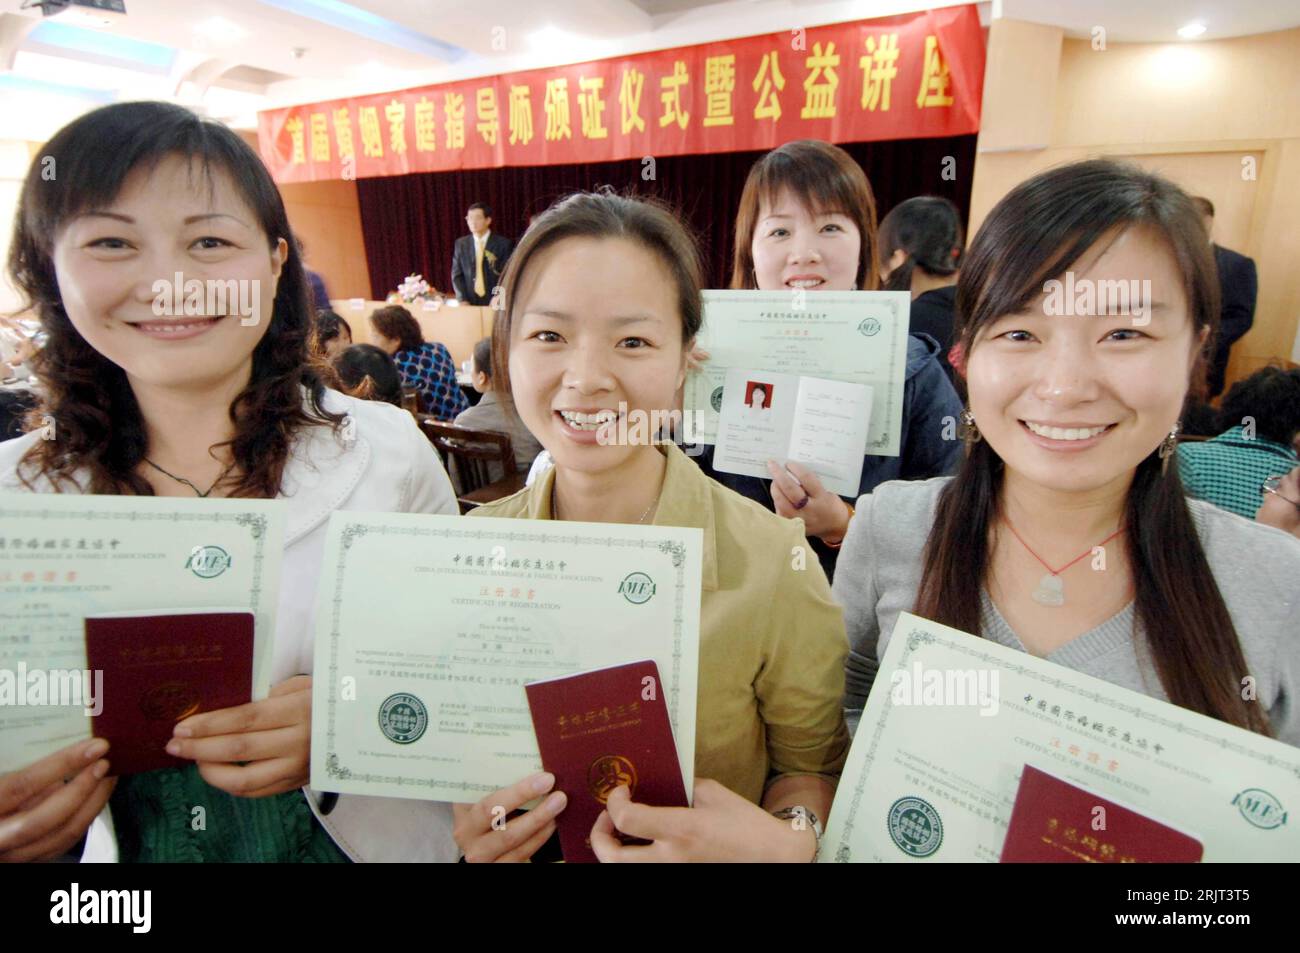 Bildnummer: 51566673  Datum: 05.11.2006  Copyright: imago/Xinhua Junge Absolventinnen zeigen stolz ihre Zertifikate, die sie als Ehe- und Familien-Berater ausweisen - Hangzhou - PUBLICATIONxNOTxINxCHN, Personen; 2006, Hangzhou, Zertifikat, Ausbildungszeugnis, Eheberater, Eheberatung, Familienberater, Familienberatung, Absolventen; , quer, Kbdig, Gruppenbild, close, China,  , Ausbildung, Bildung, o0 optimistisch Stock Photo